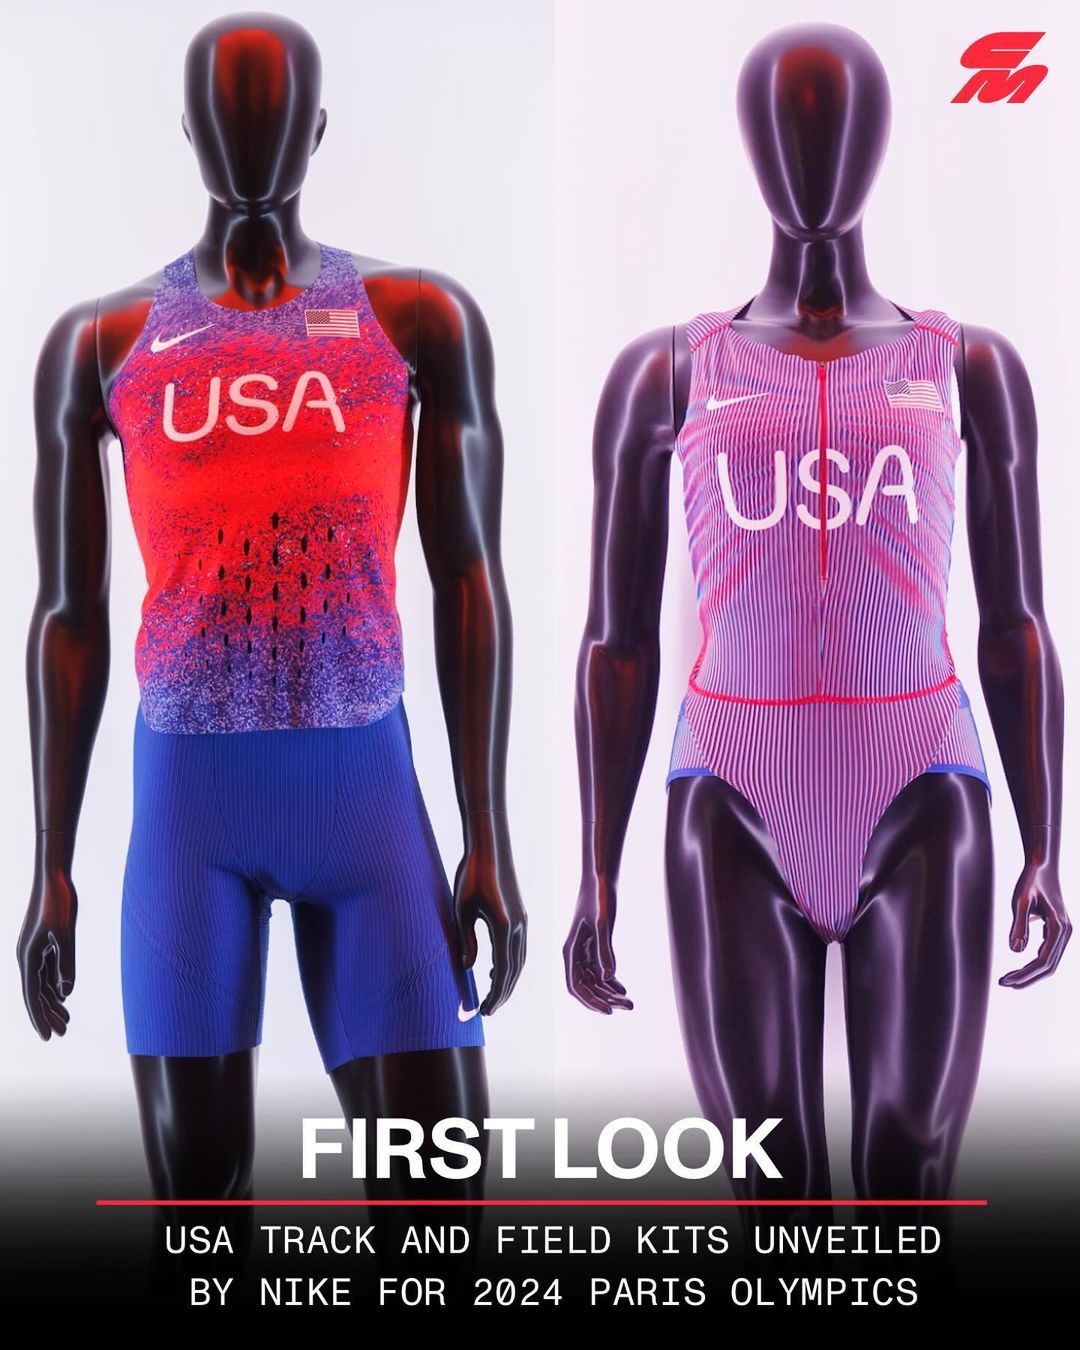 11일 나이키가 공개한 2024 파리 올림픽의 미국 육상 국가대표팀 경기복. 오른쪽 여성용 유니폼이 골반이 드러날 만큼 짧아 신체가 과하게 노출된다는 비판이 제기됐다. 사진 출처 시티우스 X(옛 트위터)